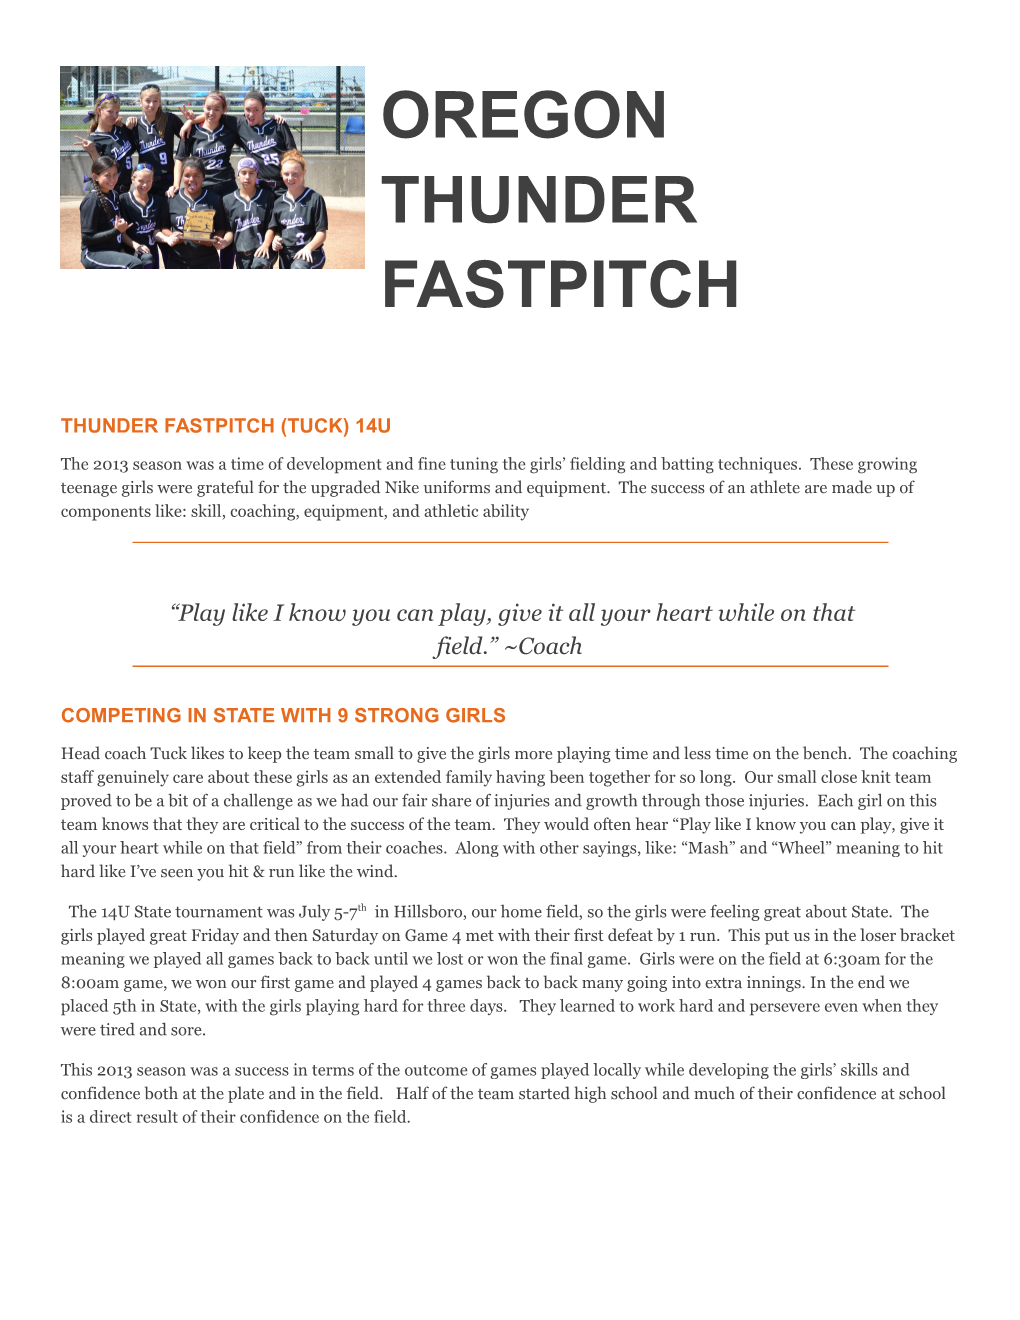 Thunder Fastpitch (Tuck) 14U